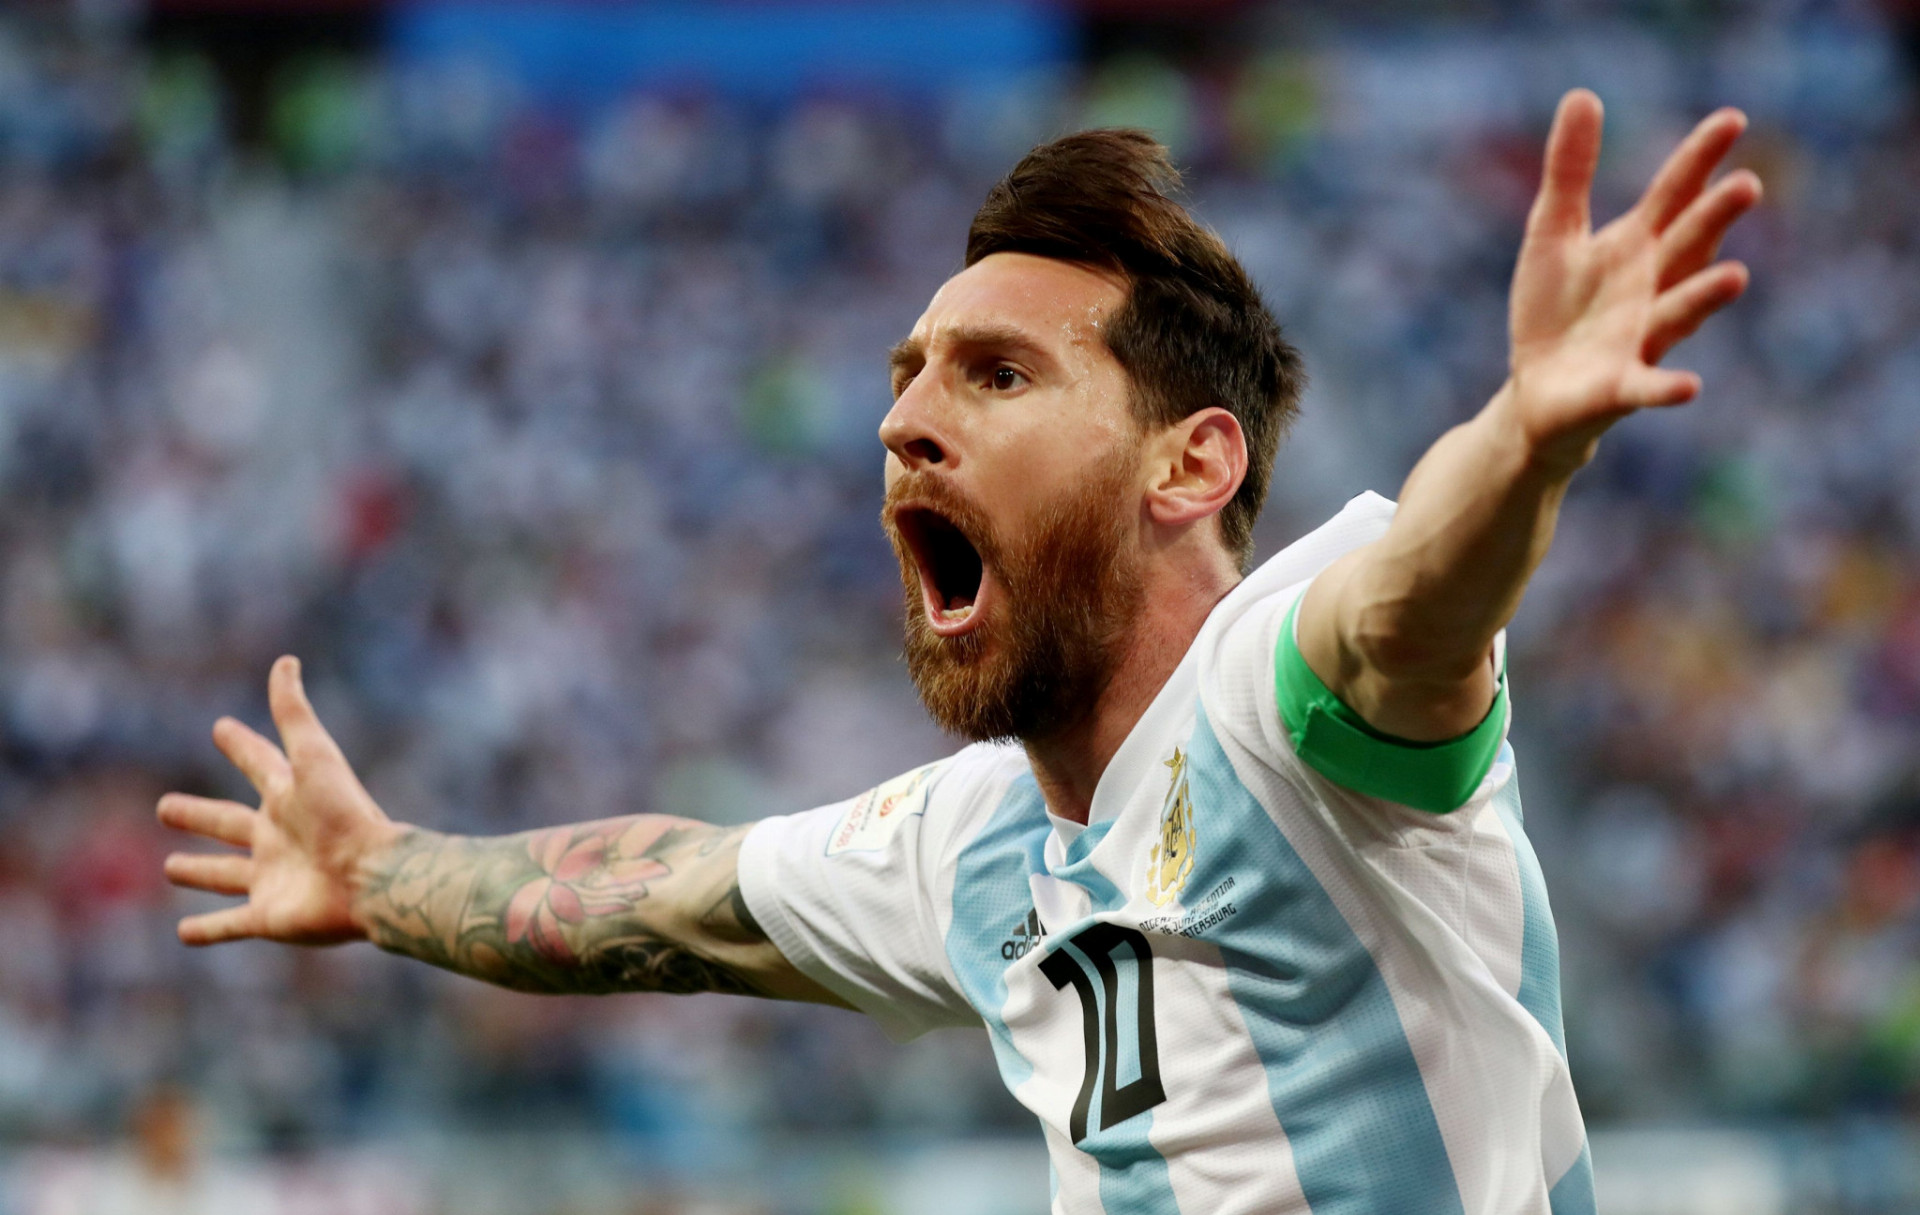 Lionel Messi strelil prvý gól na šampionáte v Rusku až v treťom zápase. Argentína neťaží z jeho výkonov tak ako na MS 2014 v Brazílii.